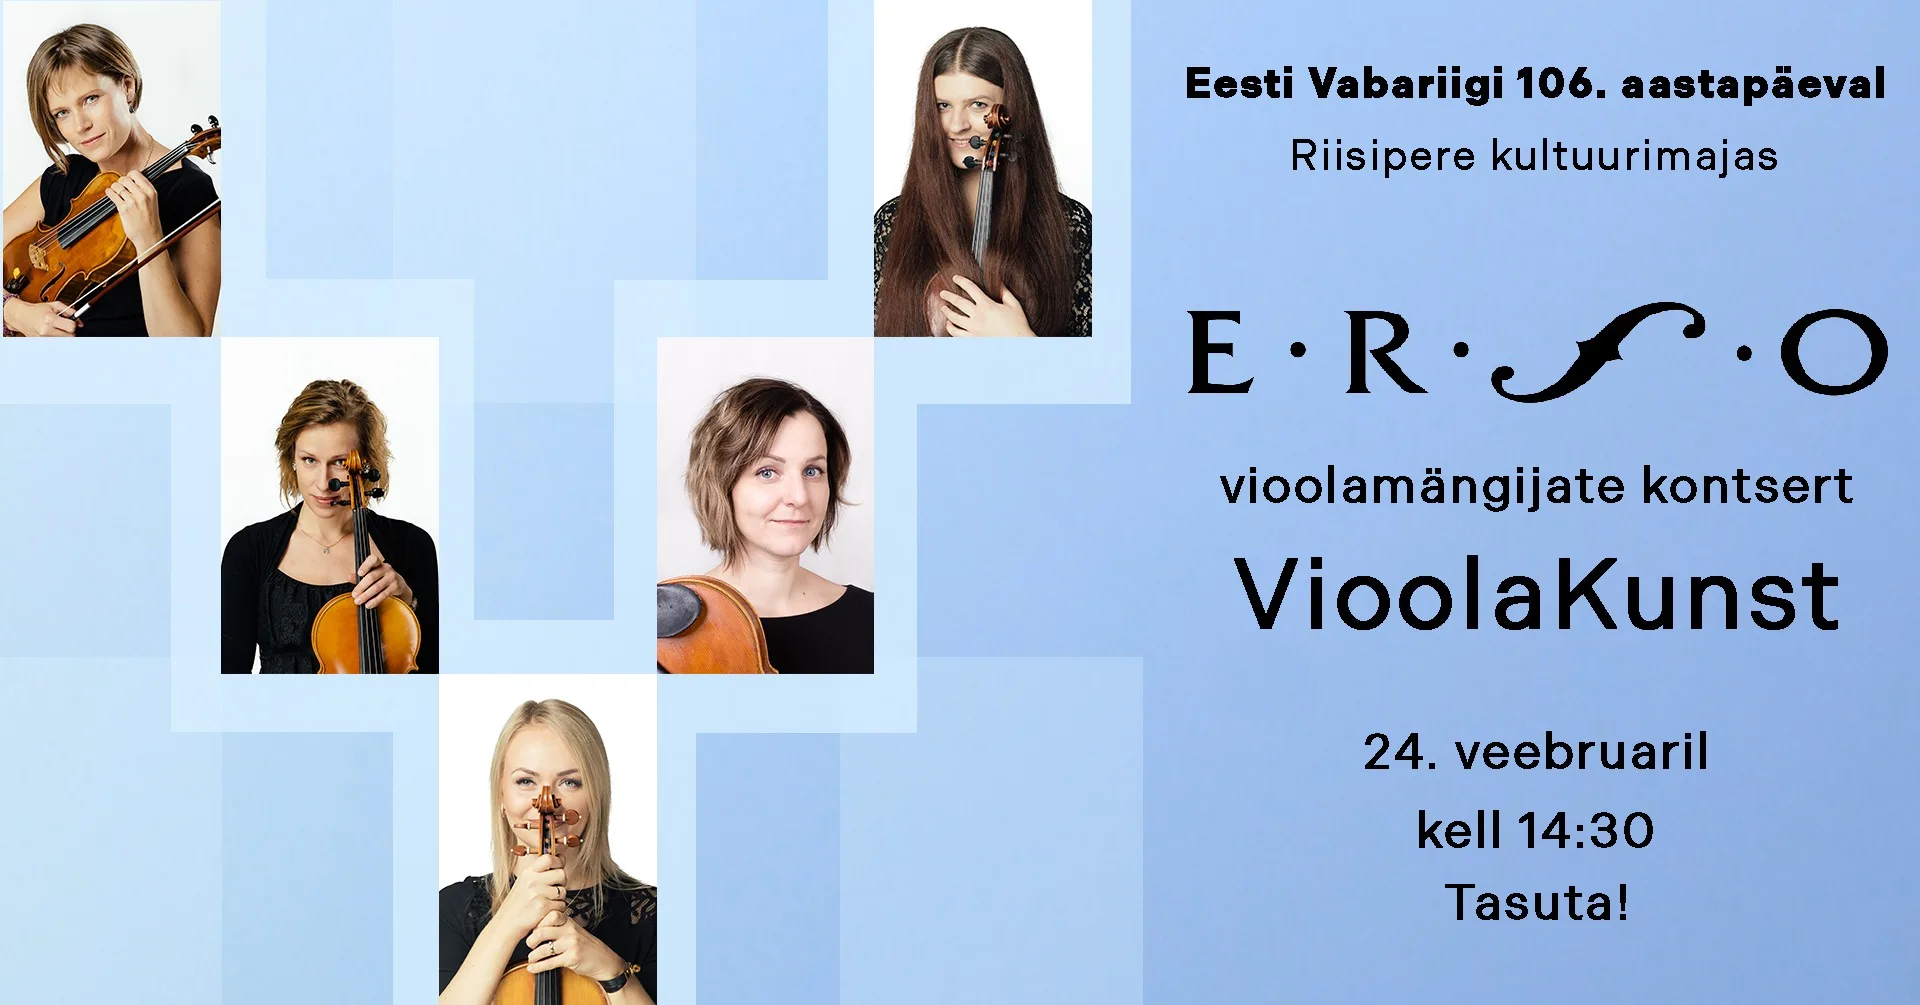 ERSO vioolamängijate kontsert “VioolaKunst” Eesti Vabariigi 106.aastapäeval